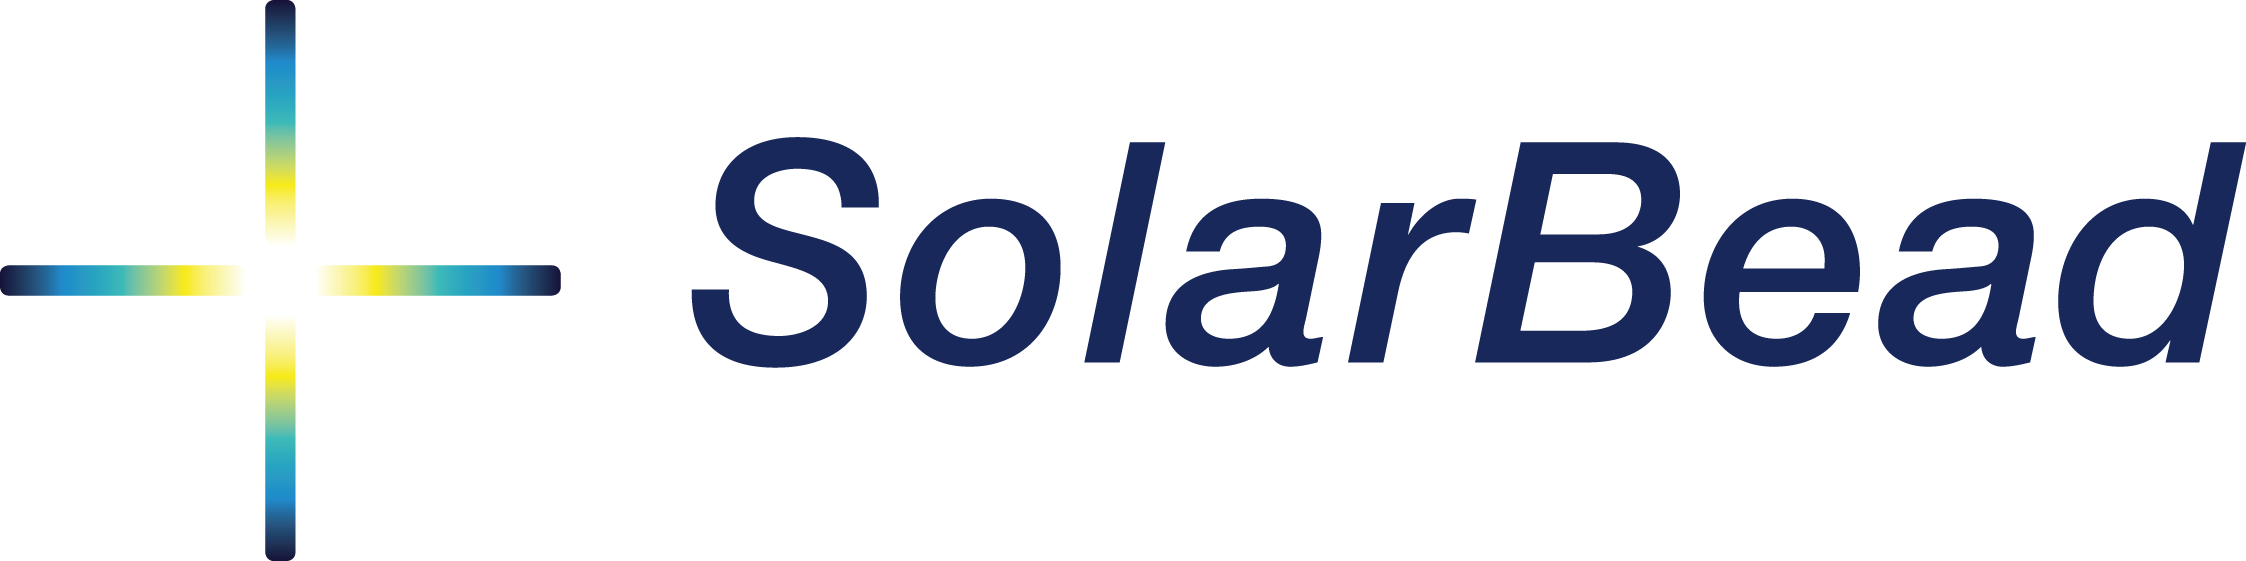 SolarBead logo